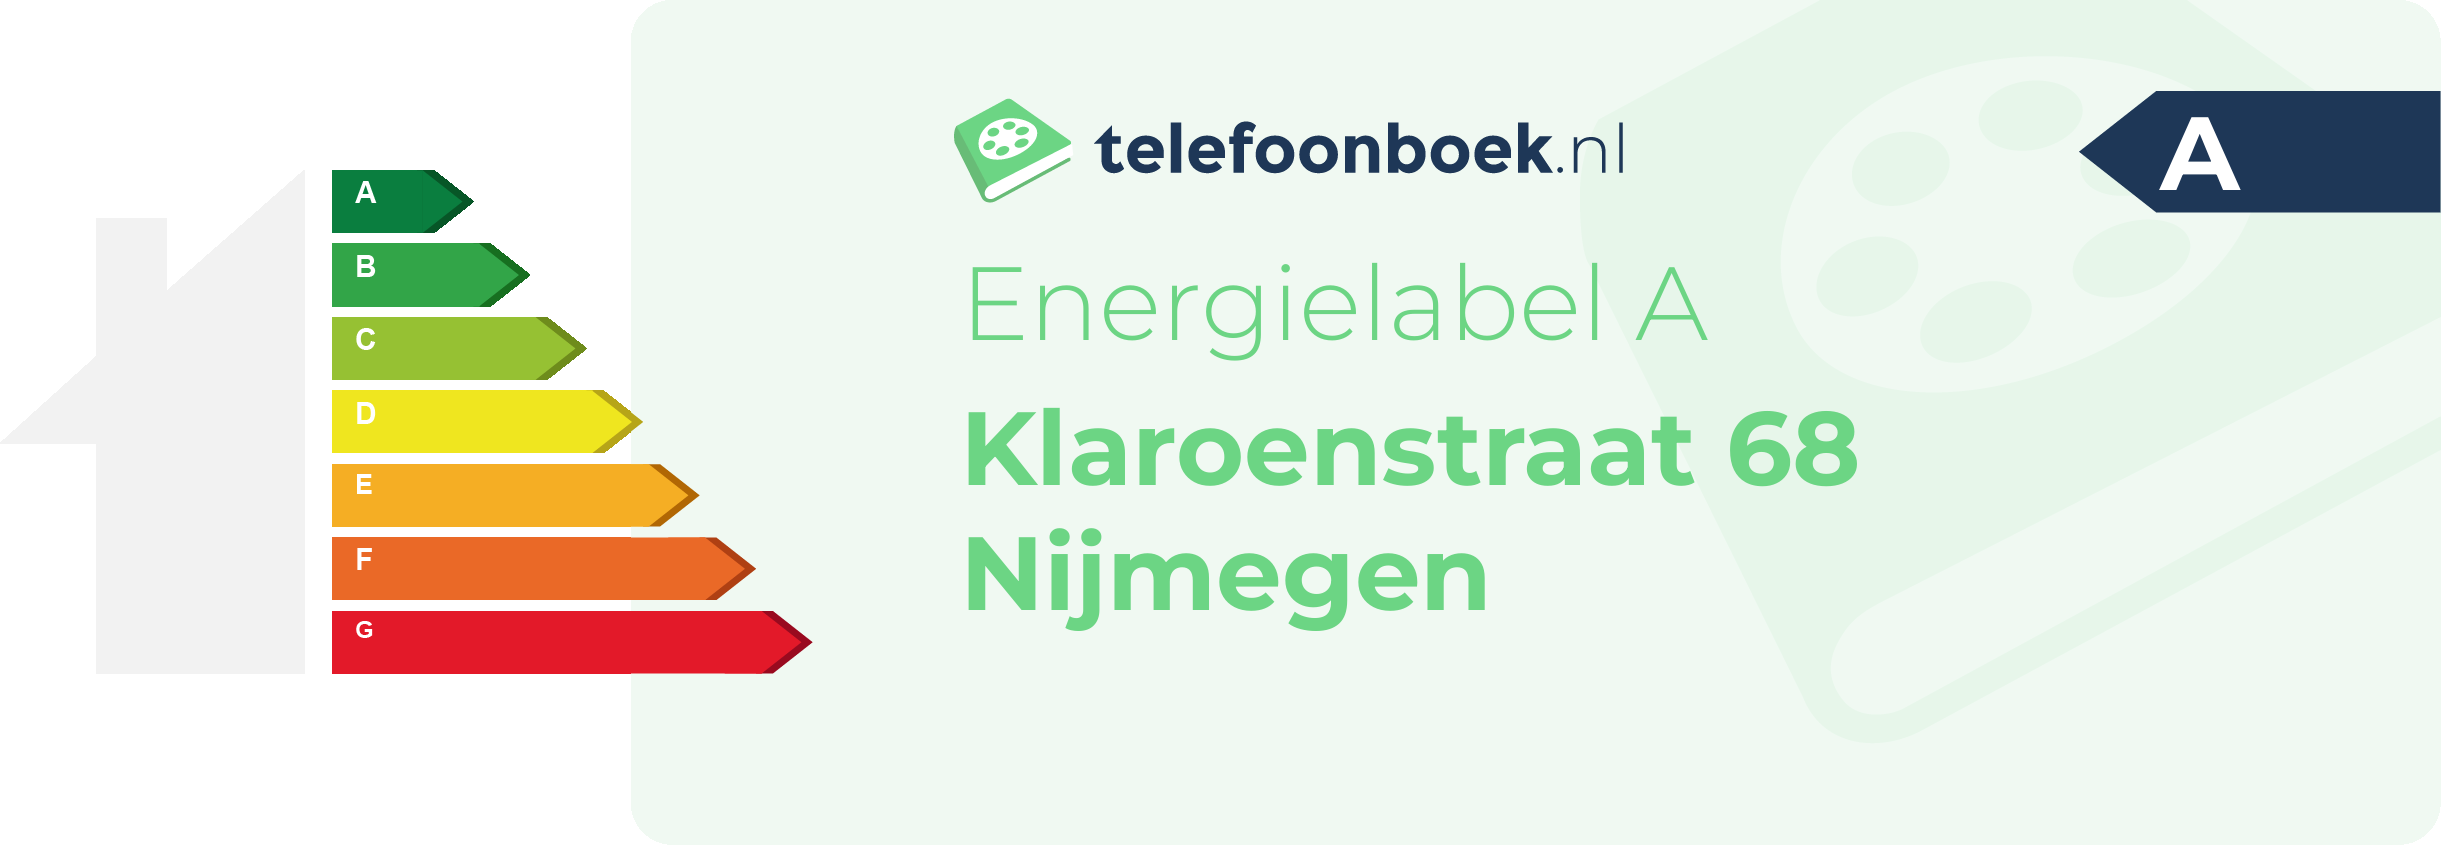 Energielabel Klaroenstraat 68 Nijmegen